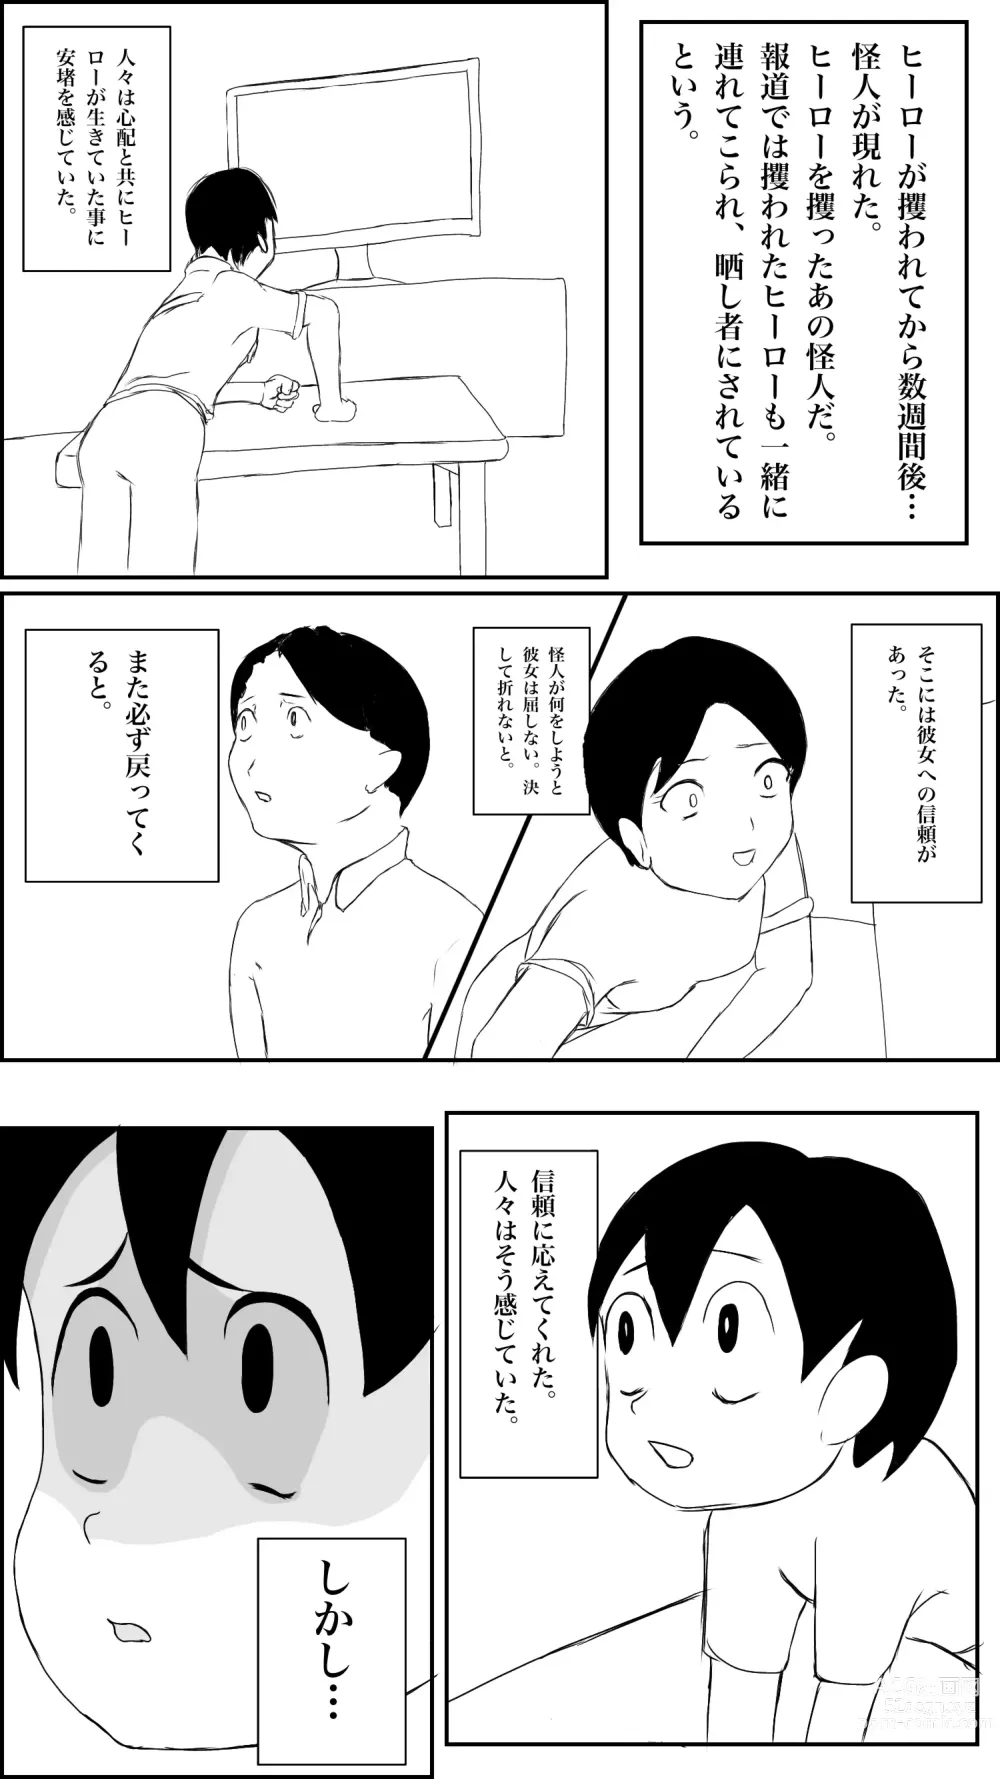 Page 46 of doujinshi Machi no hīrō no haiboku